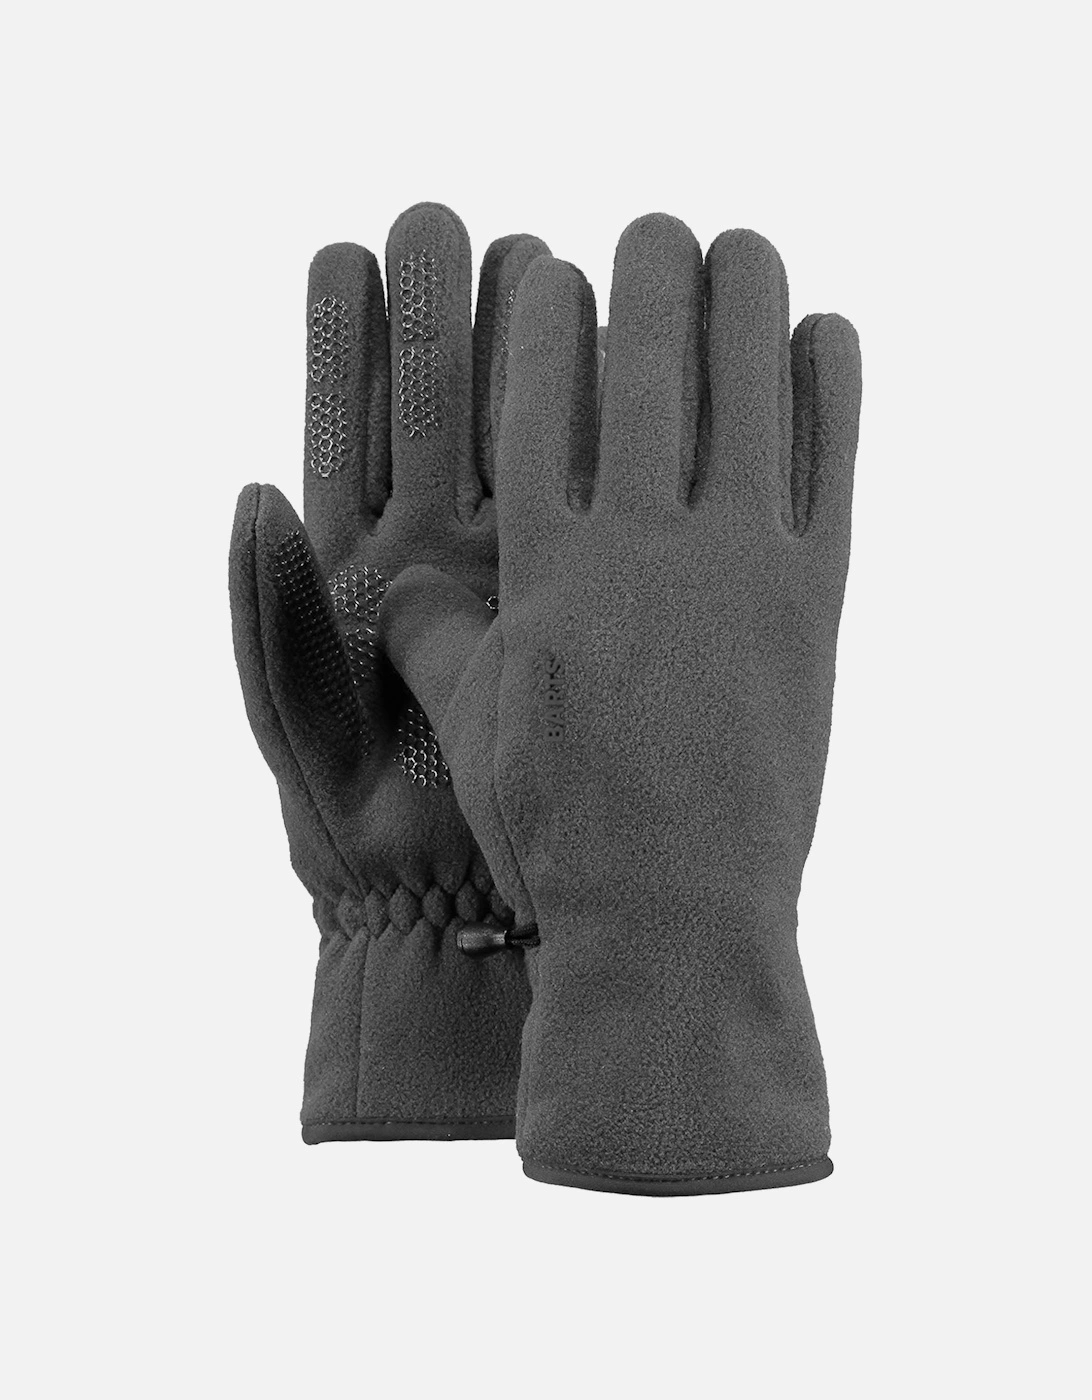 Mens Fleece Palm Grip Gloves